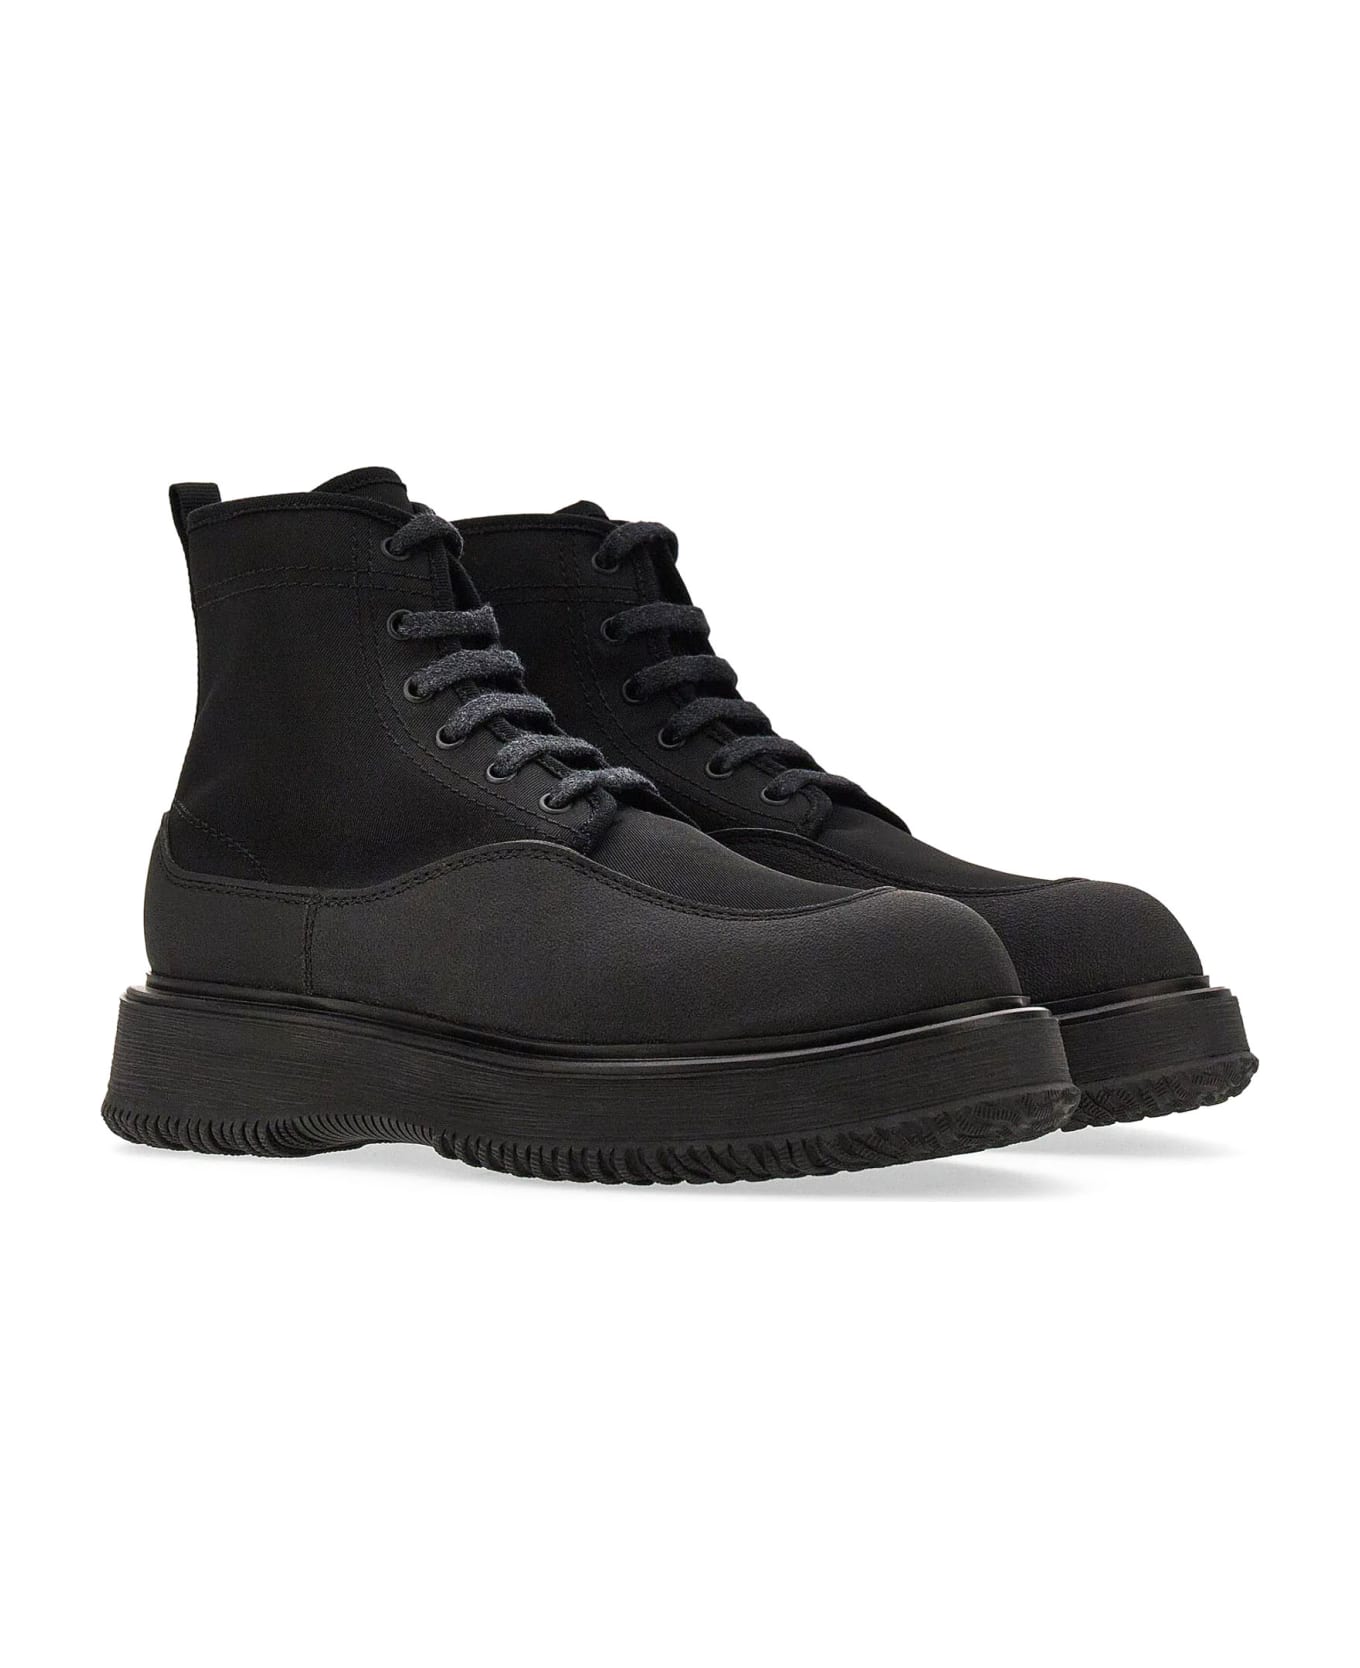 Hogan Sneakers Black - Black